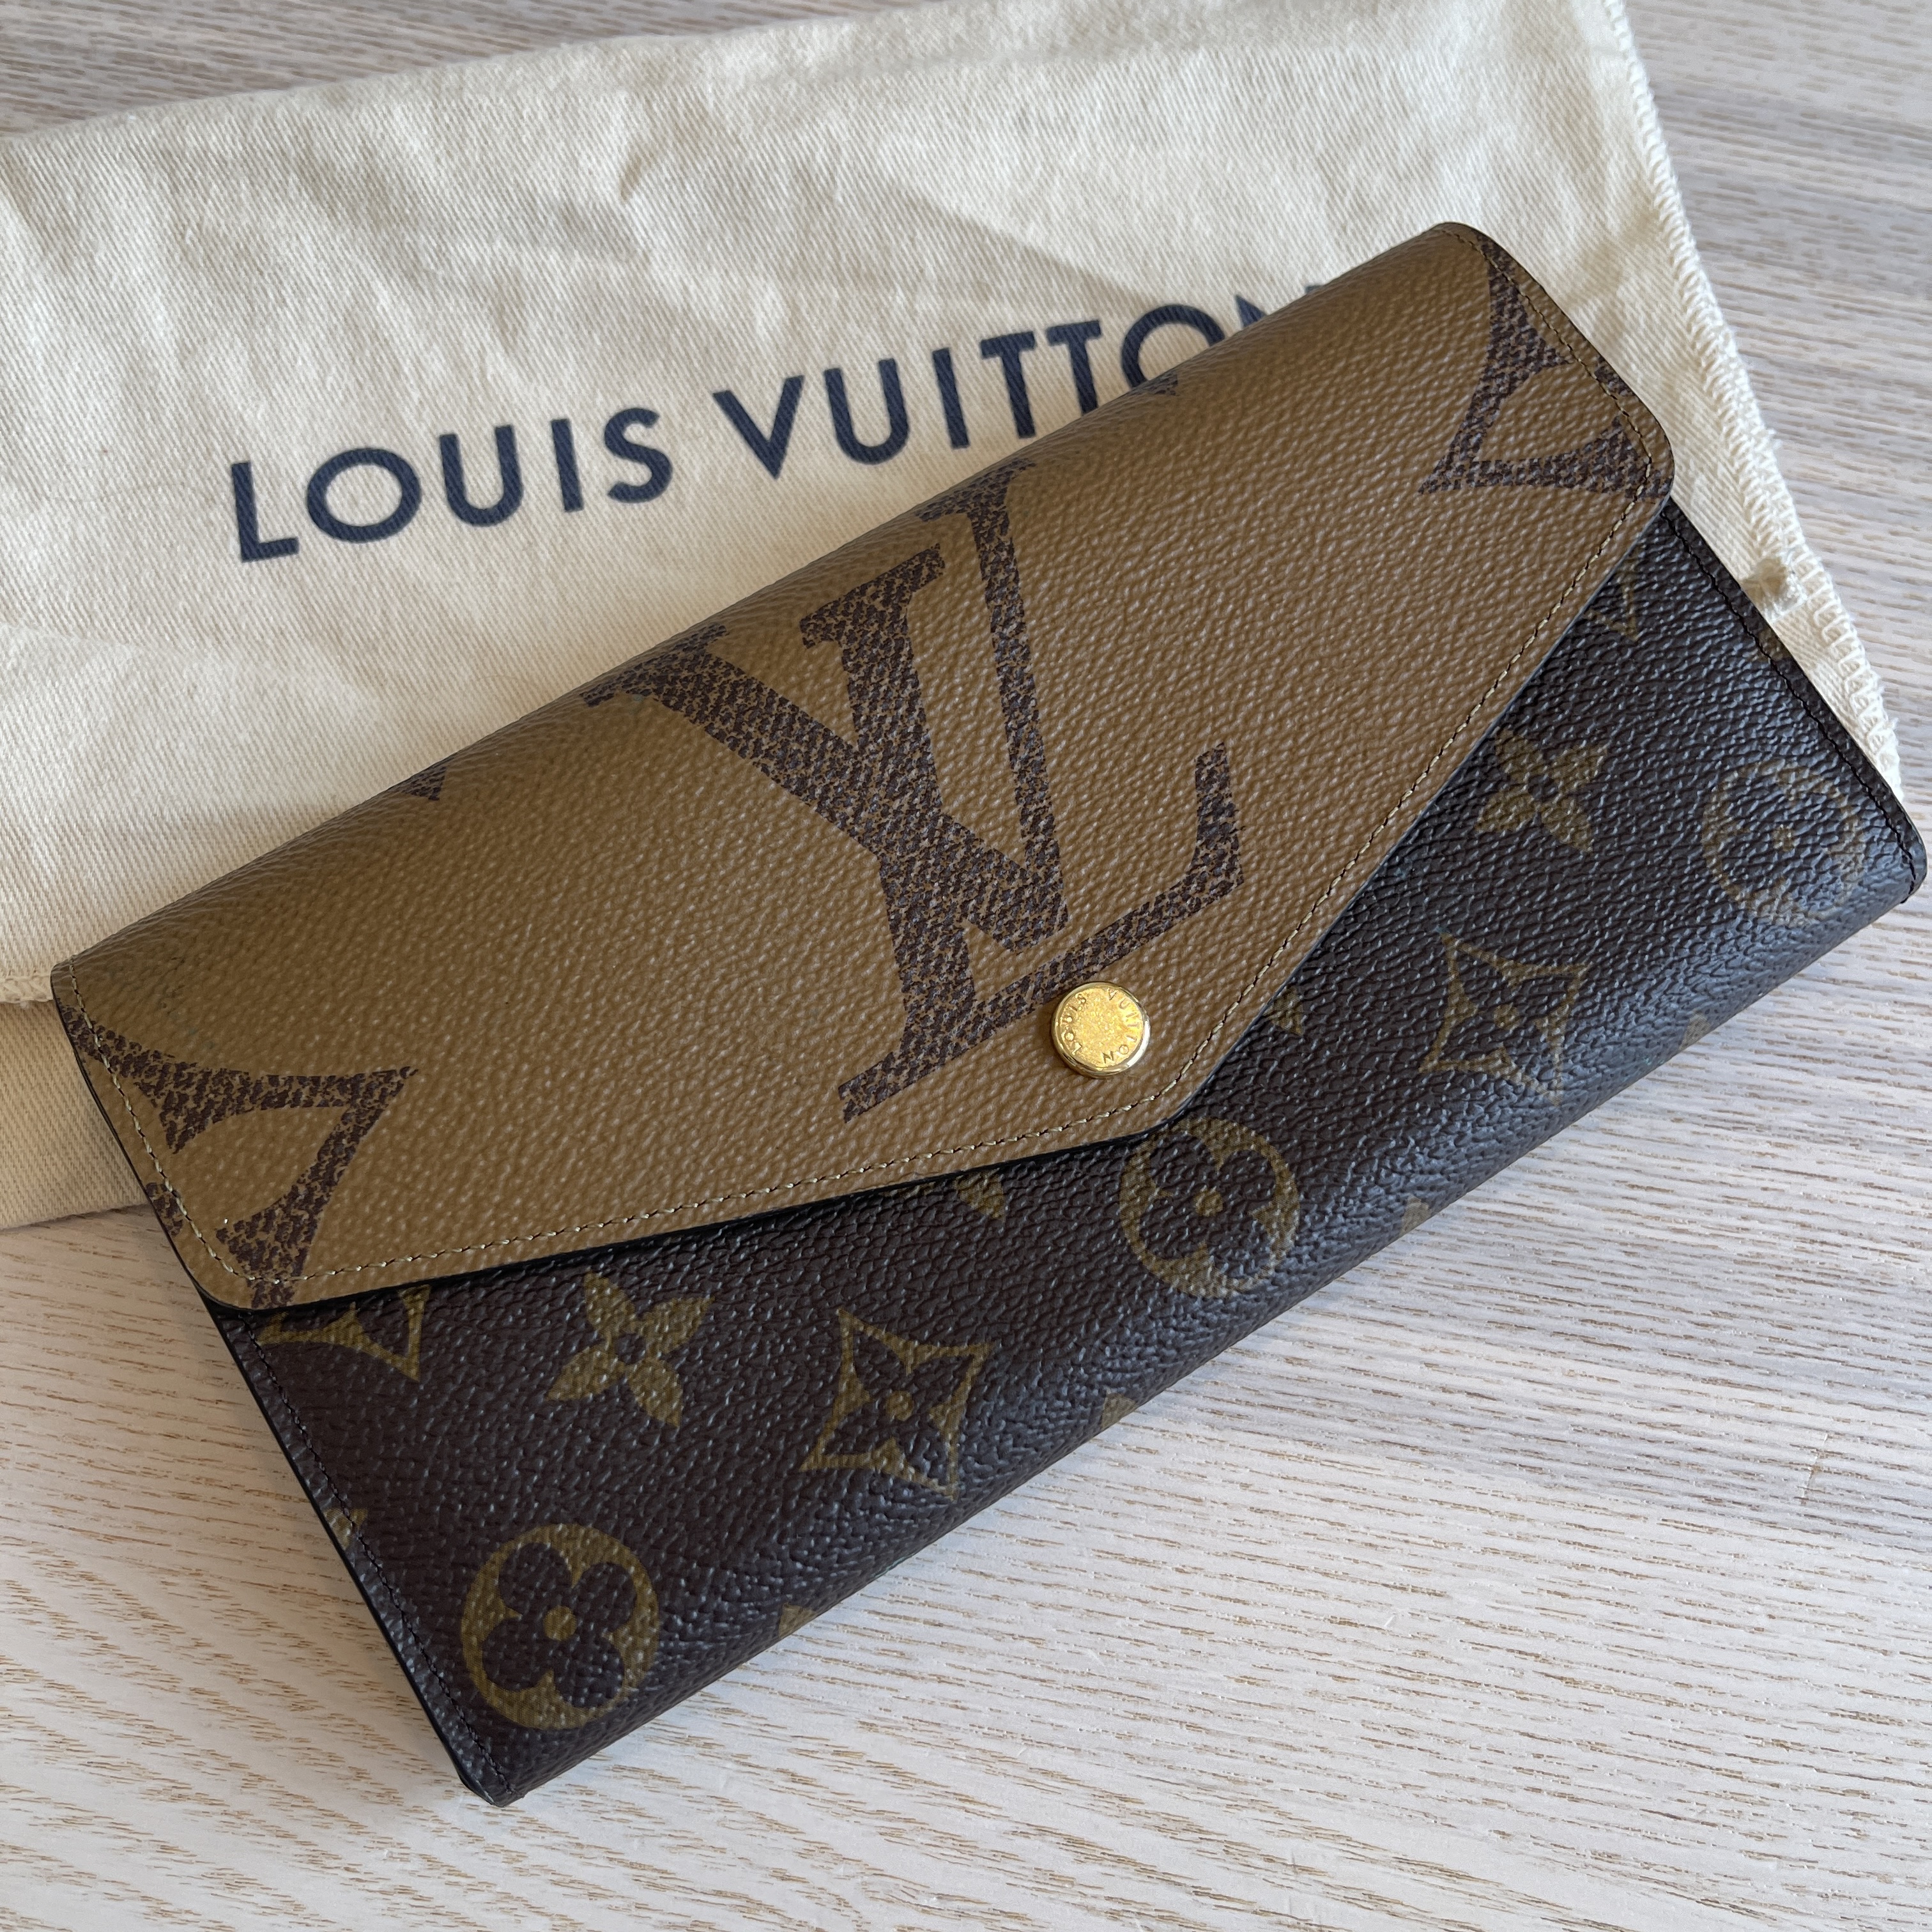 Louis Vuitton Monogram Sarah Wallet NM